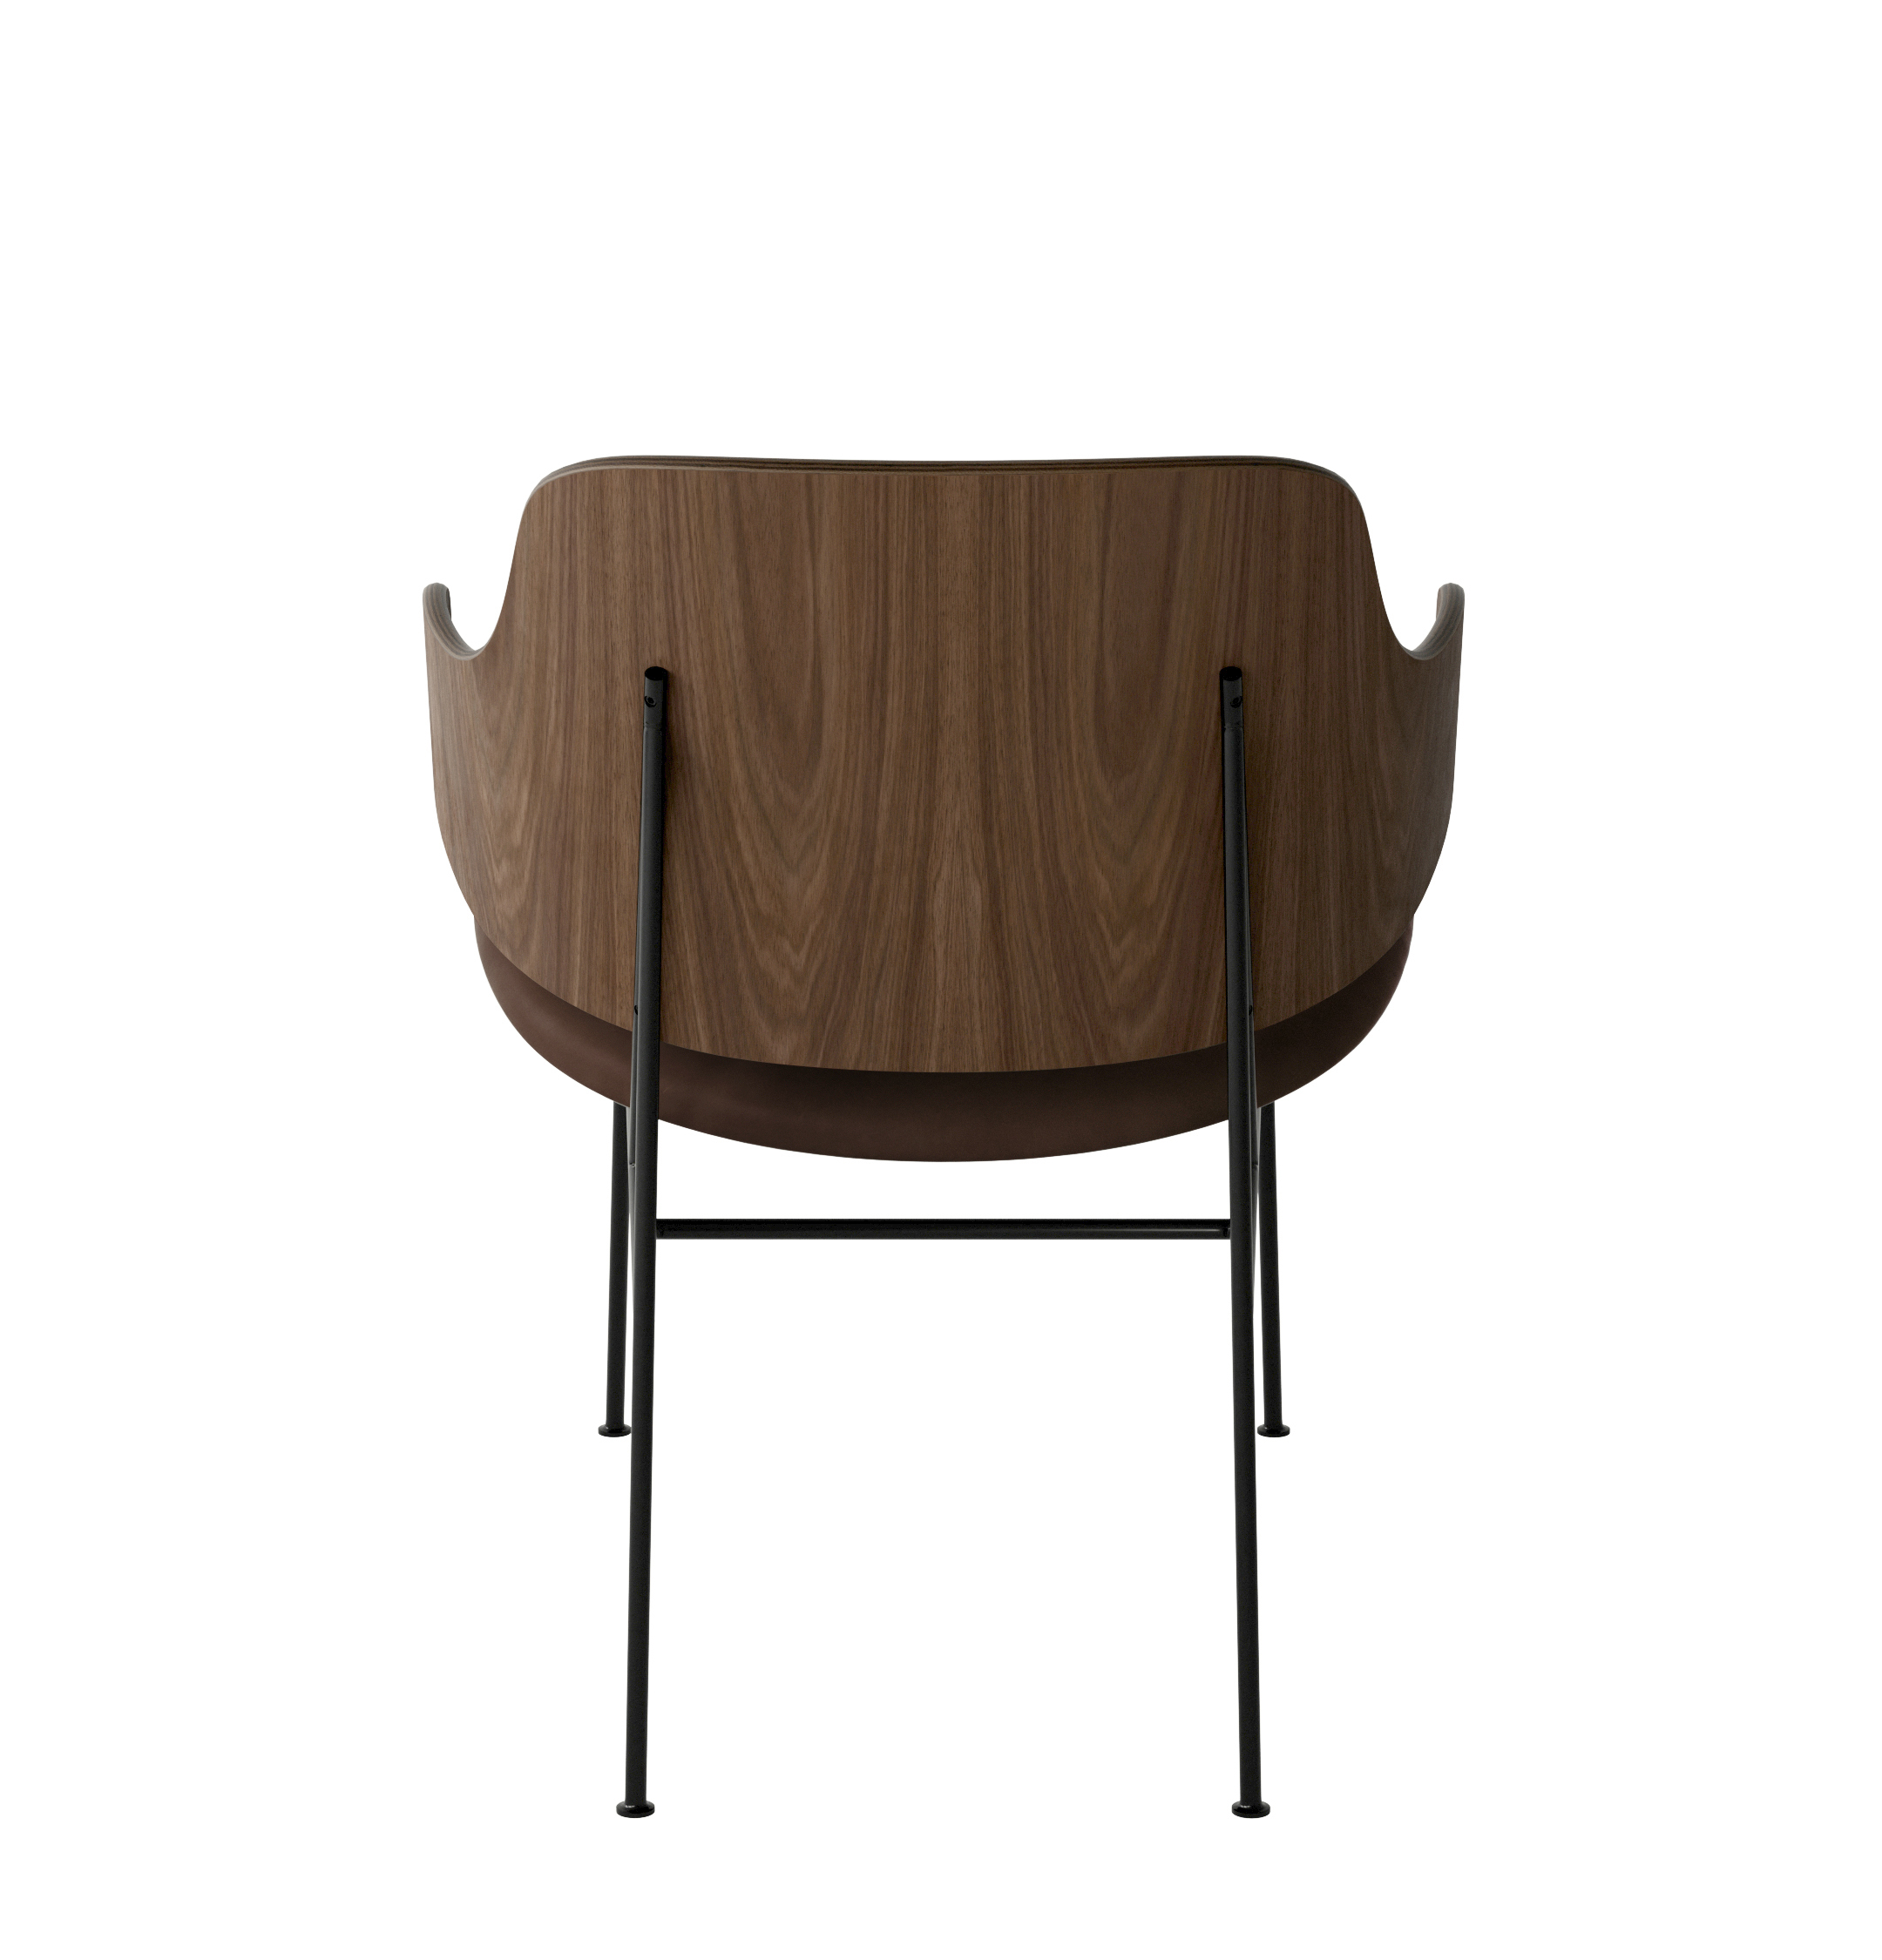 Menu - The Penguin fauteuil, zwart stalen frame, walnoten rugleuning, 0329 (Brown)